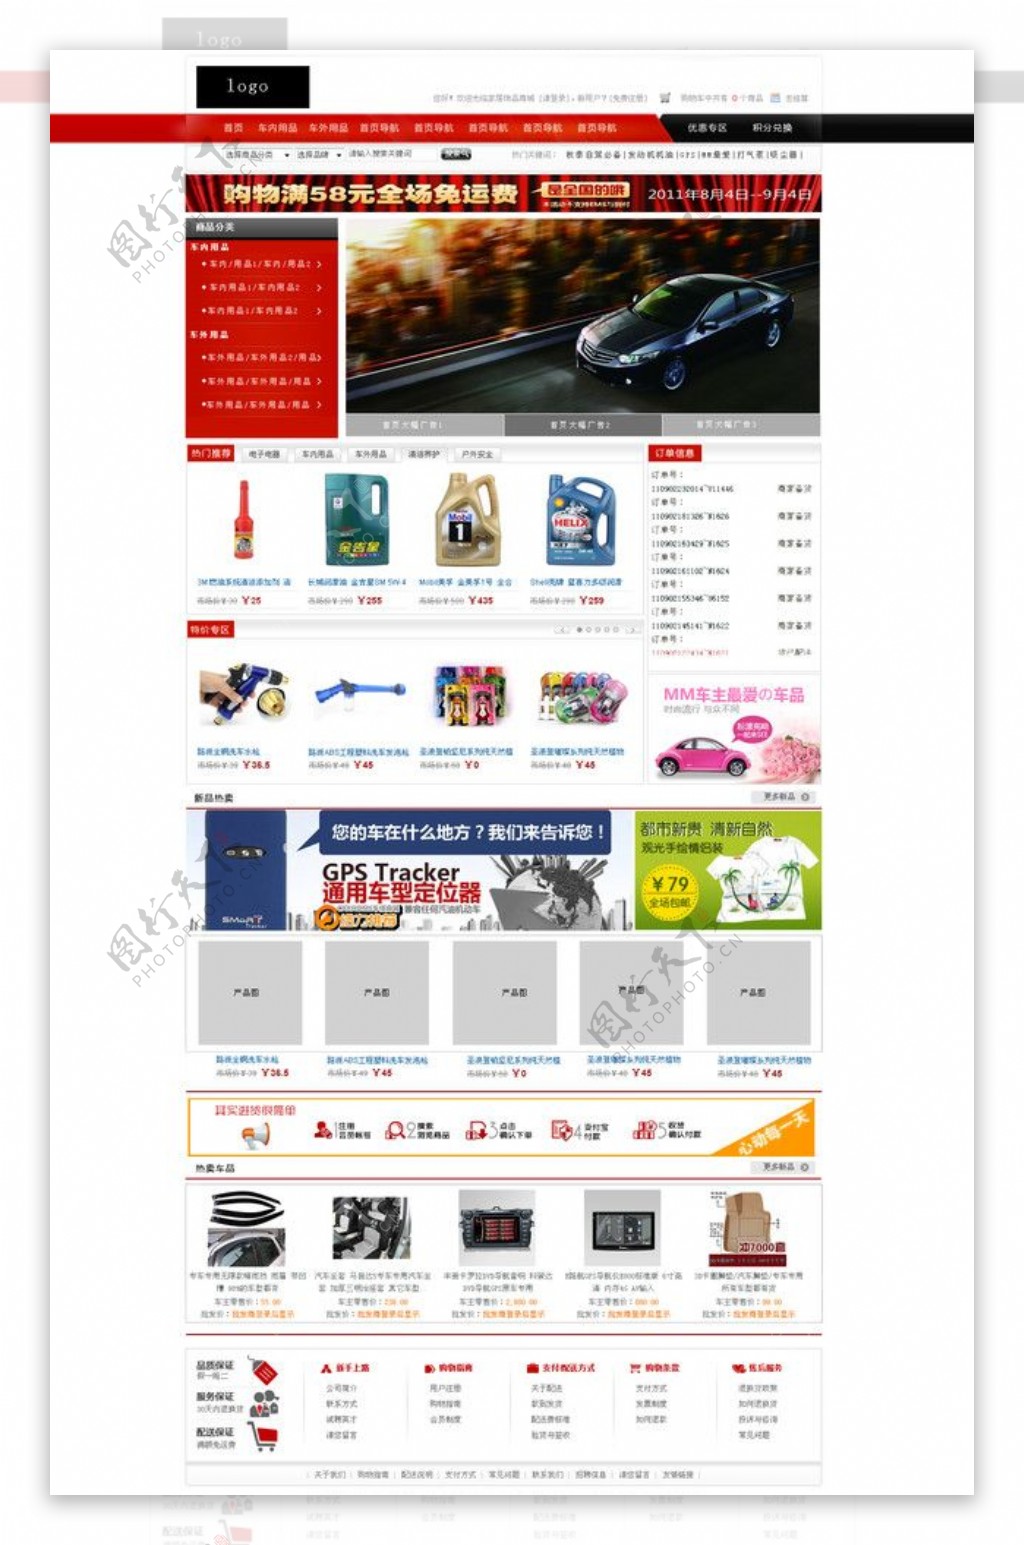 红黑风格汽车商城网站图片